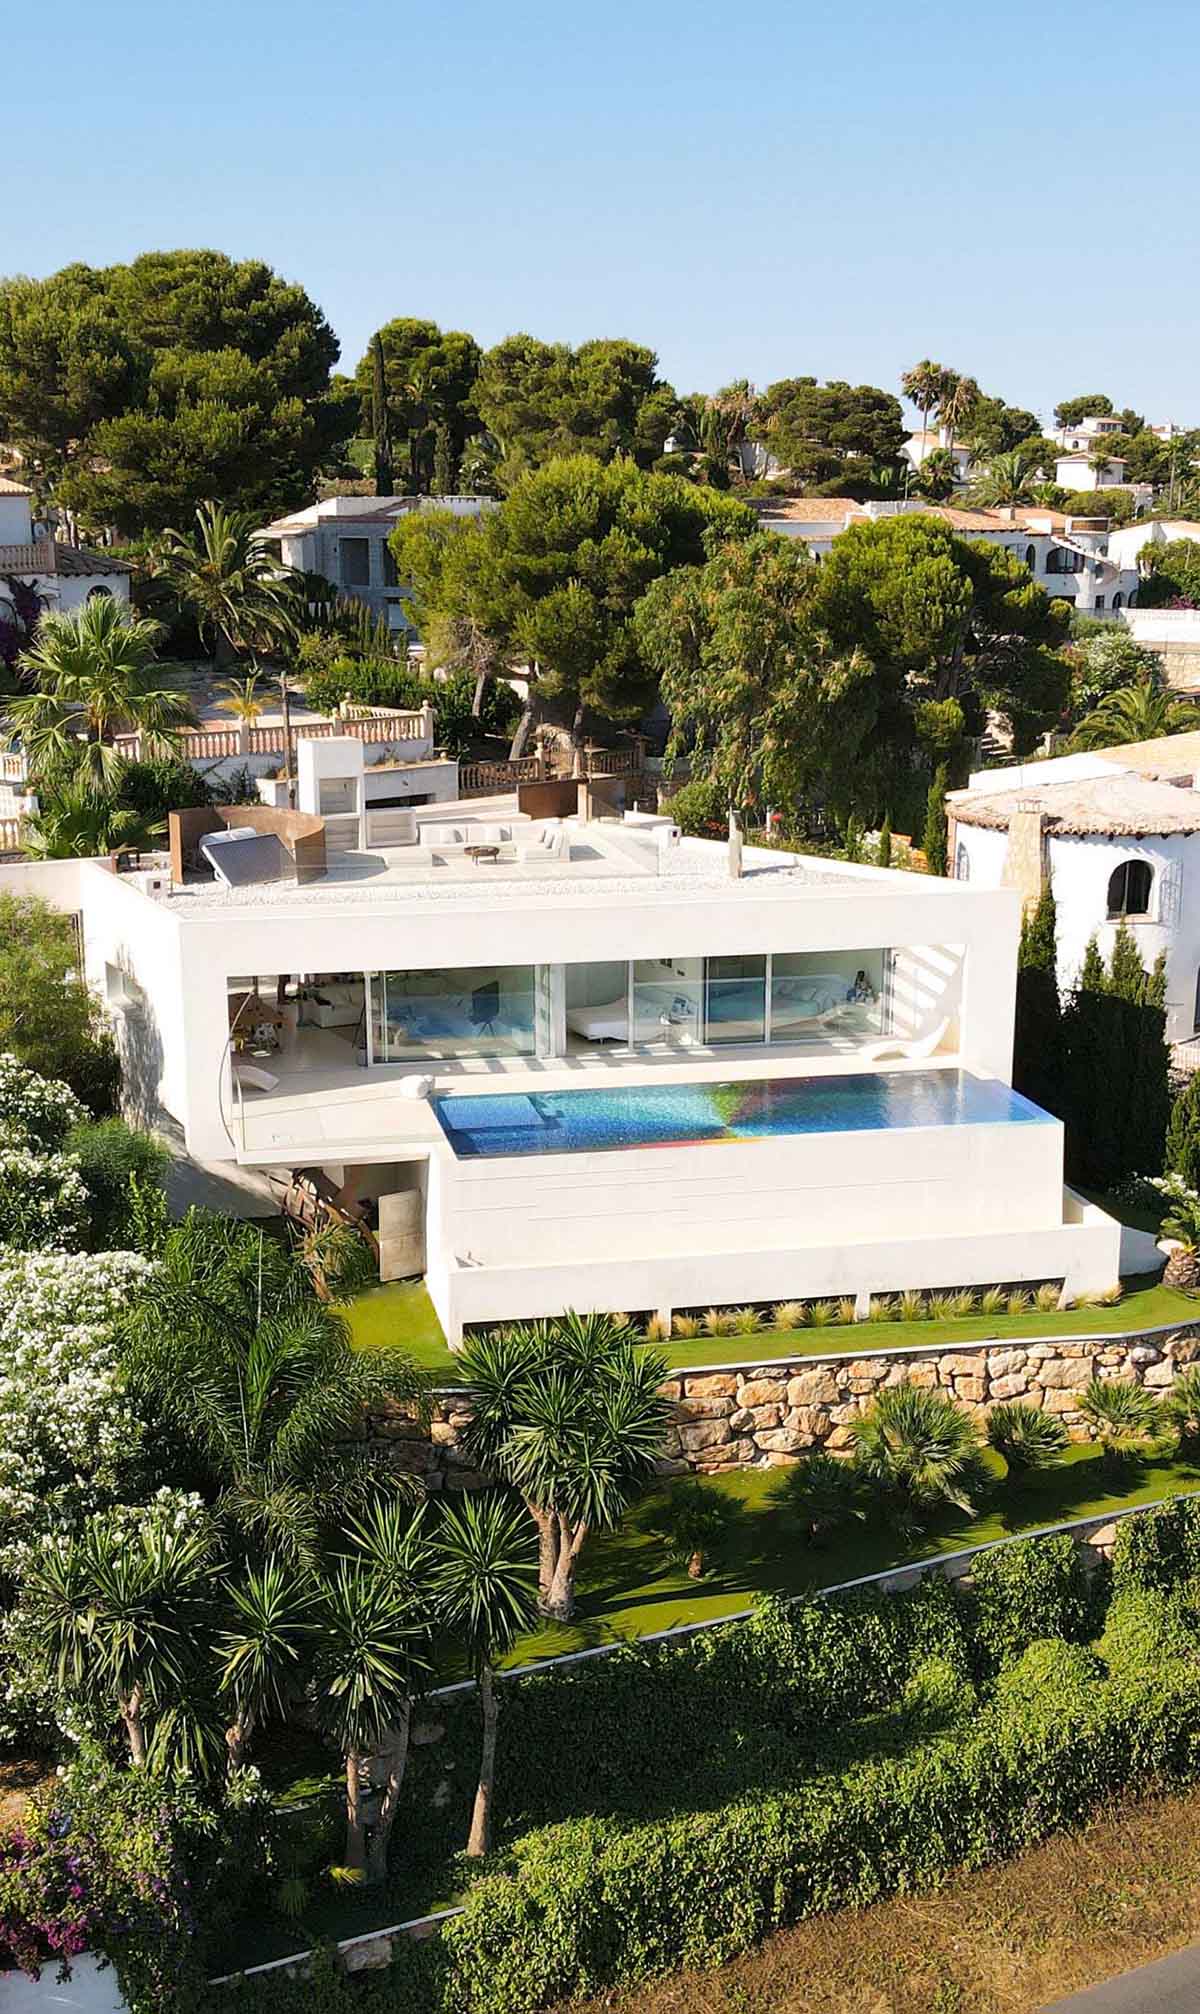 住宅设计,别墅设计案例,Felipe Pantone,海景别墅,别墅泳池,国外住宅设计案例,泳池设计,马赛克,西班牙